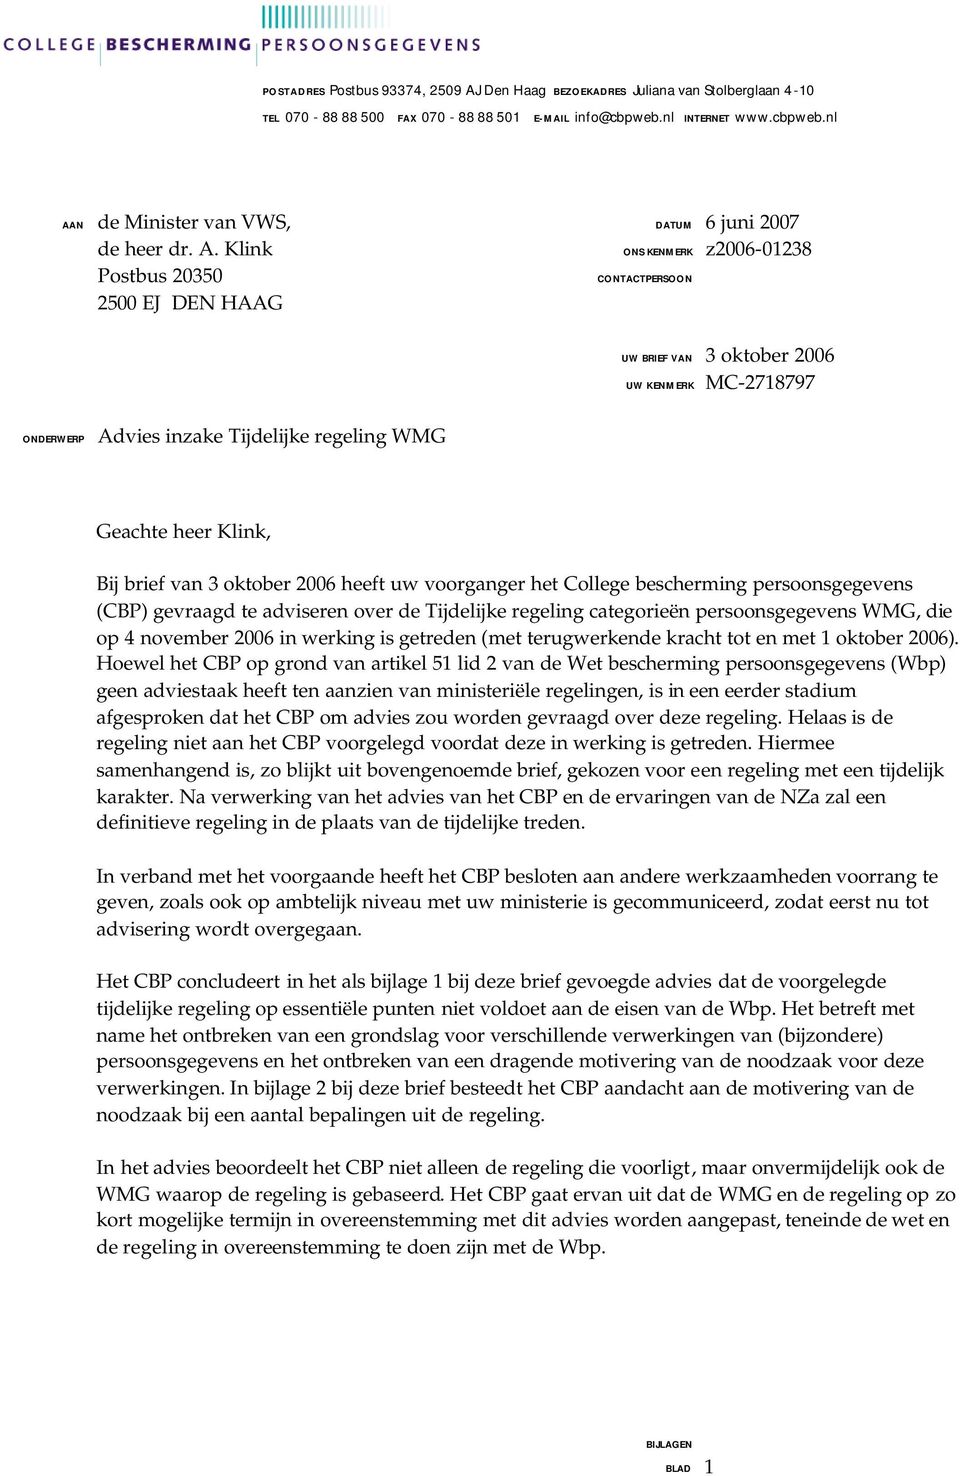 brief van 3 oktober 2006 heeft uw voorganger het College bescherming persoonsgegevens (CBP) gevraagd te adviseren over de Tijdelijke regeling categorieën persoonsgegevens WMG, die op 4 november 2006